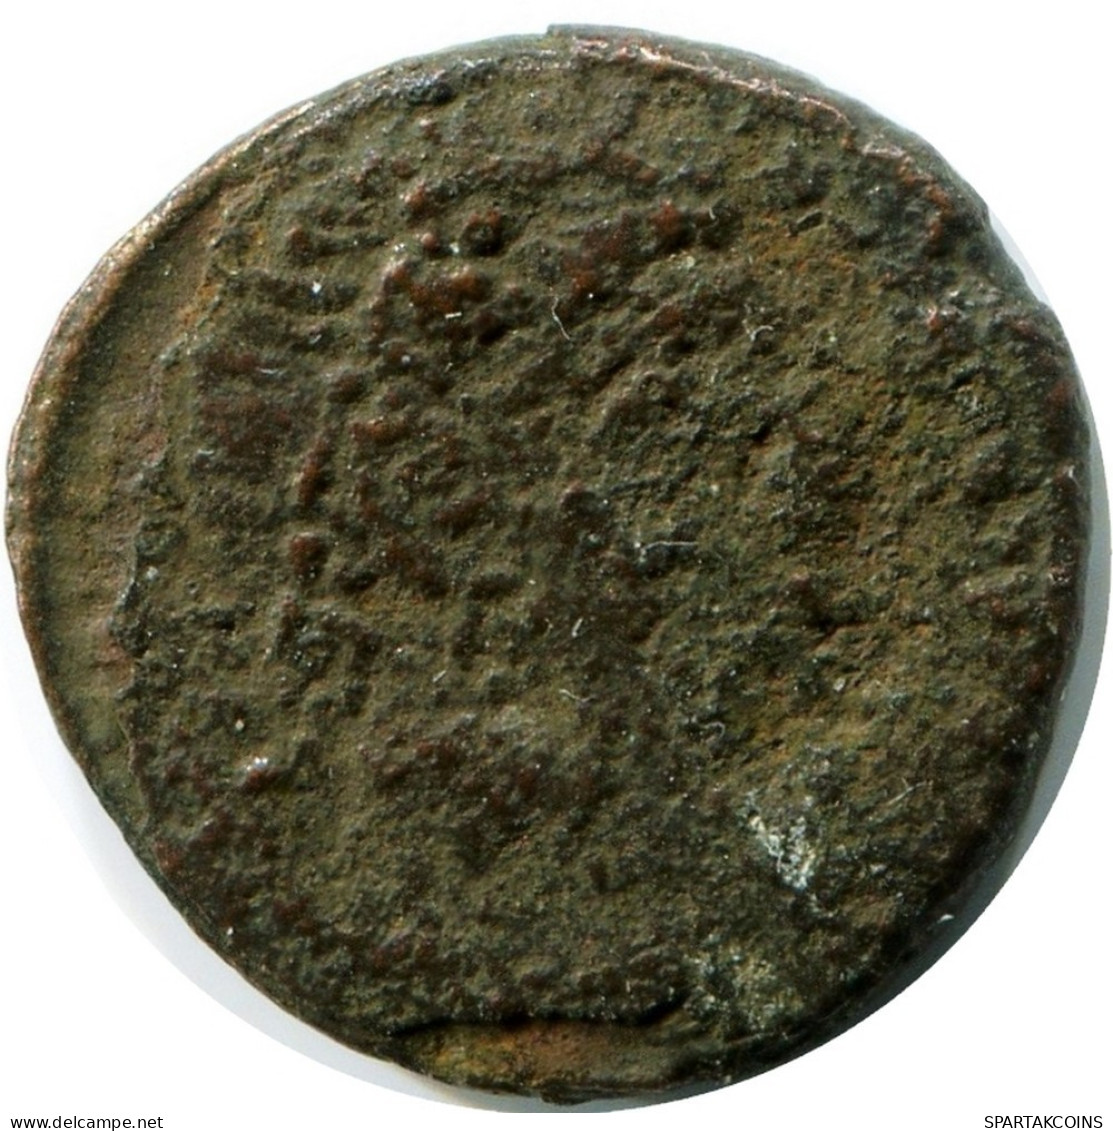 ROMAN Pièce MINTED IN ANTIOCH FOUND IN IHNASYAH HOARD EGYPT #ANC11288.14.F.A - Der Christlischen Kaiser (307 / 363)